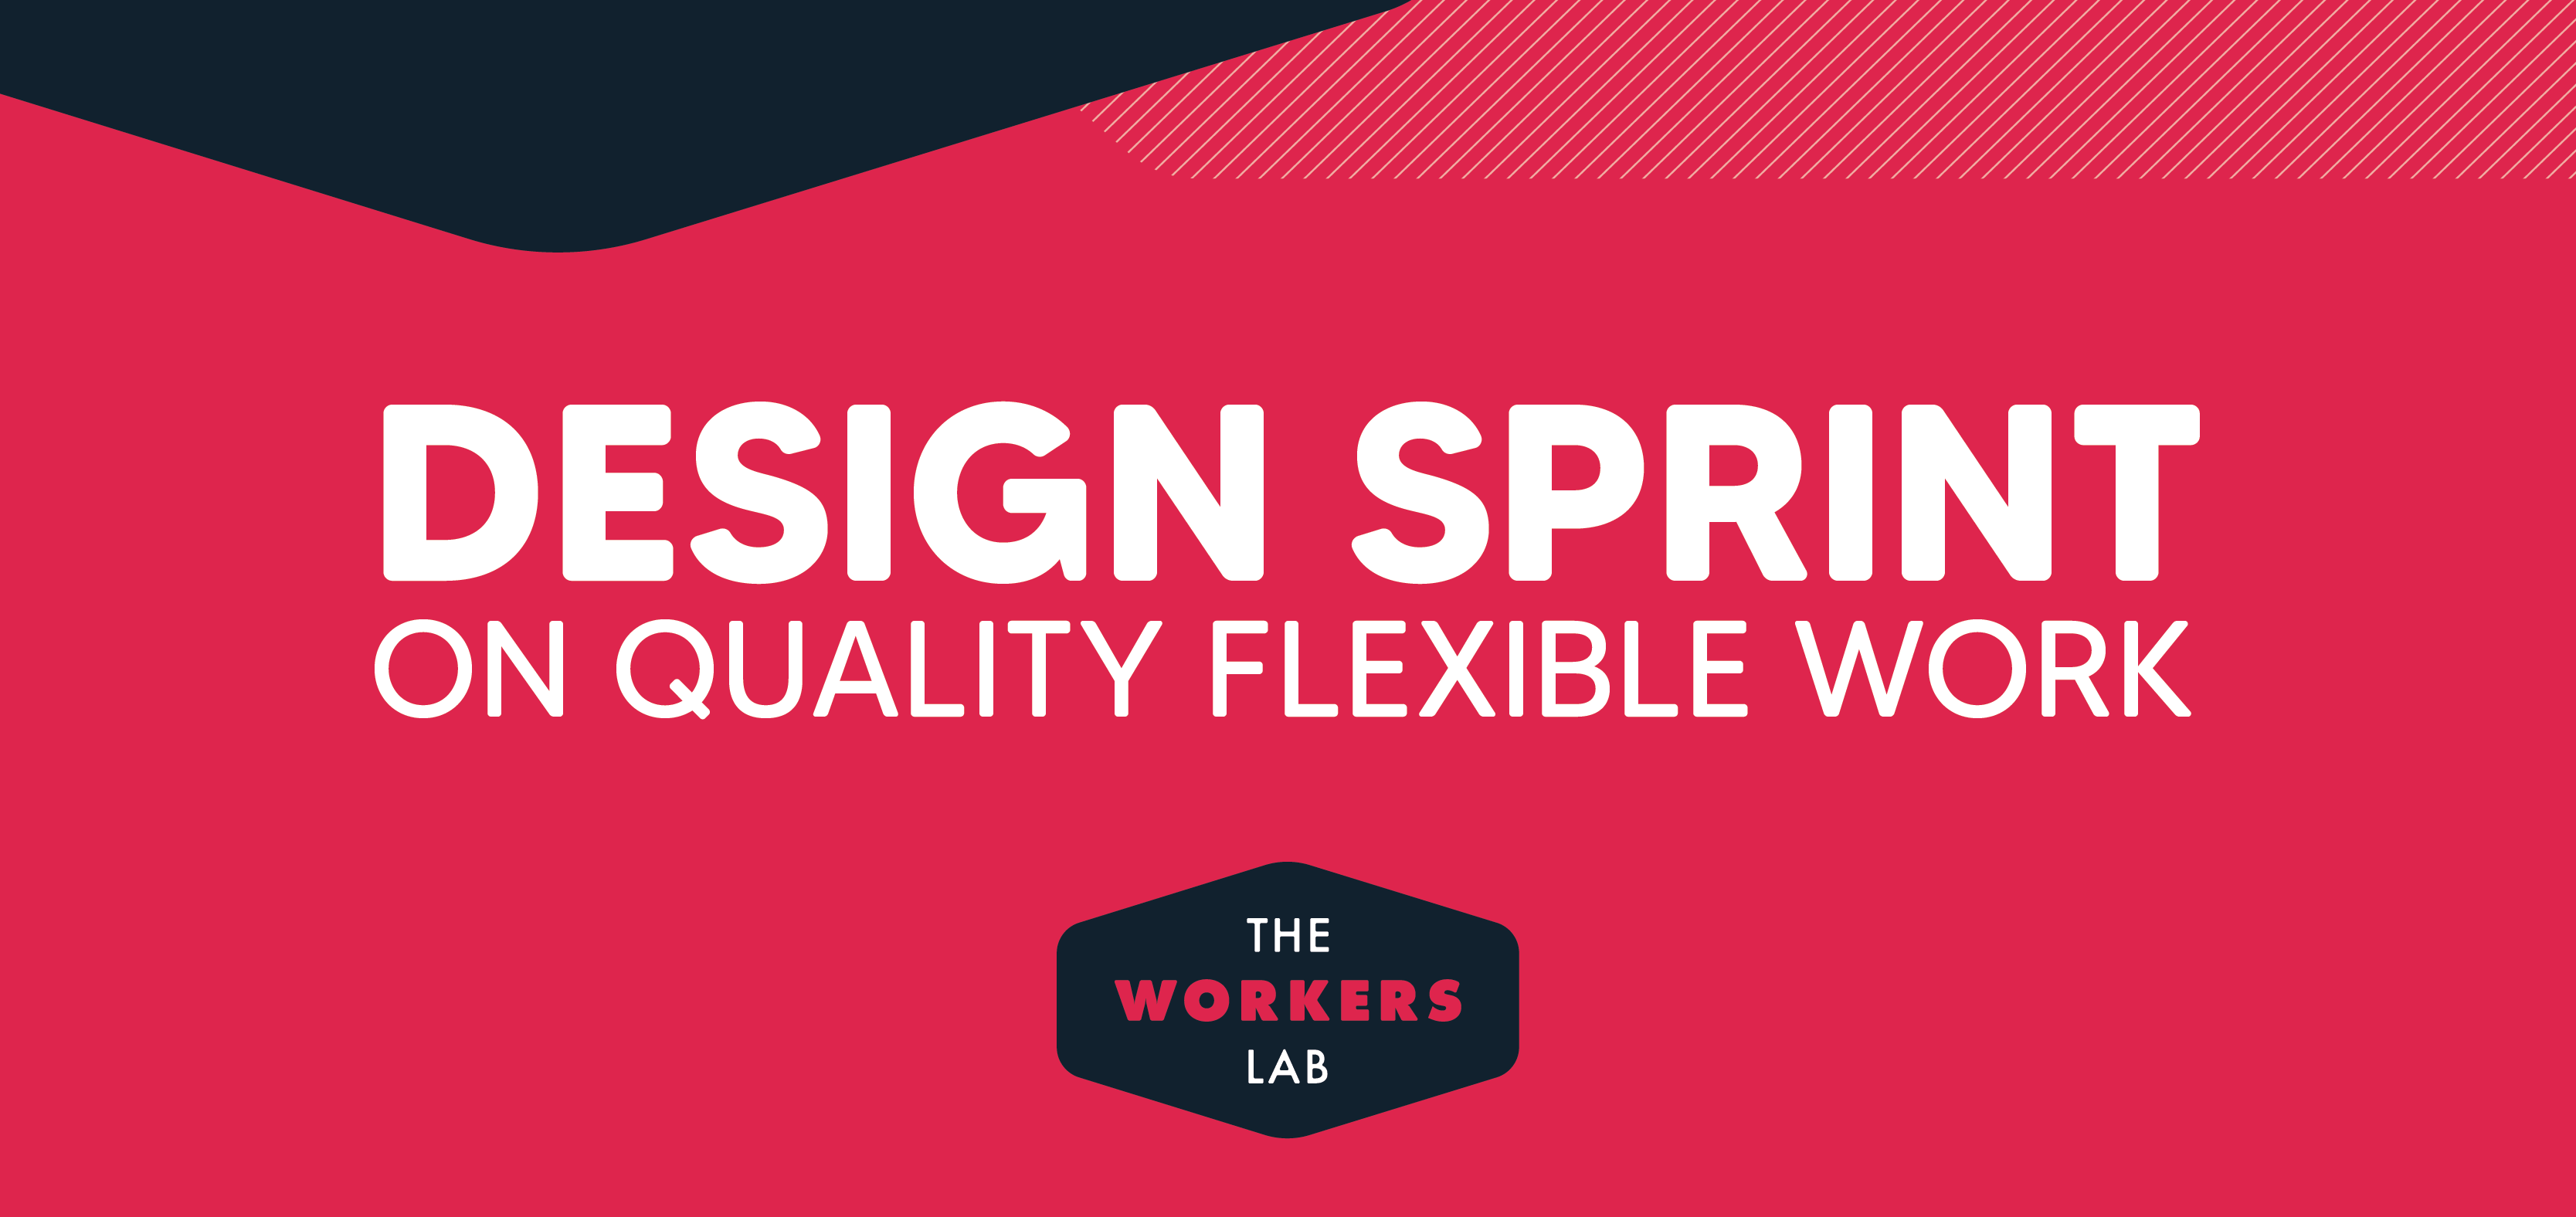 DesignSprint-FlexWork-Banner1